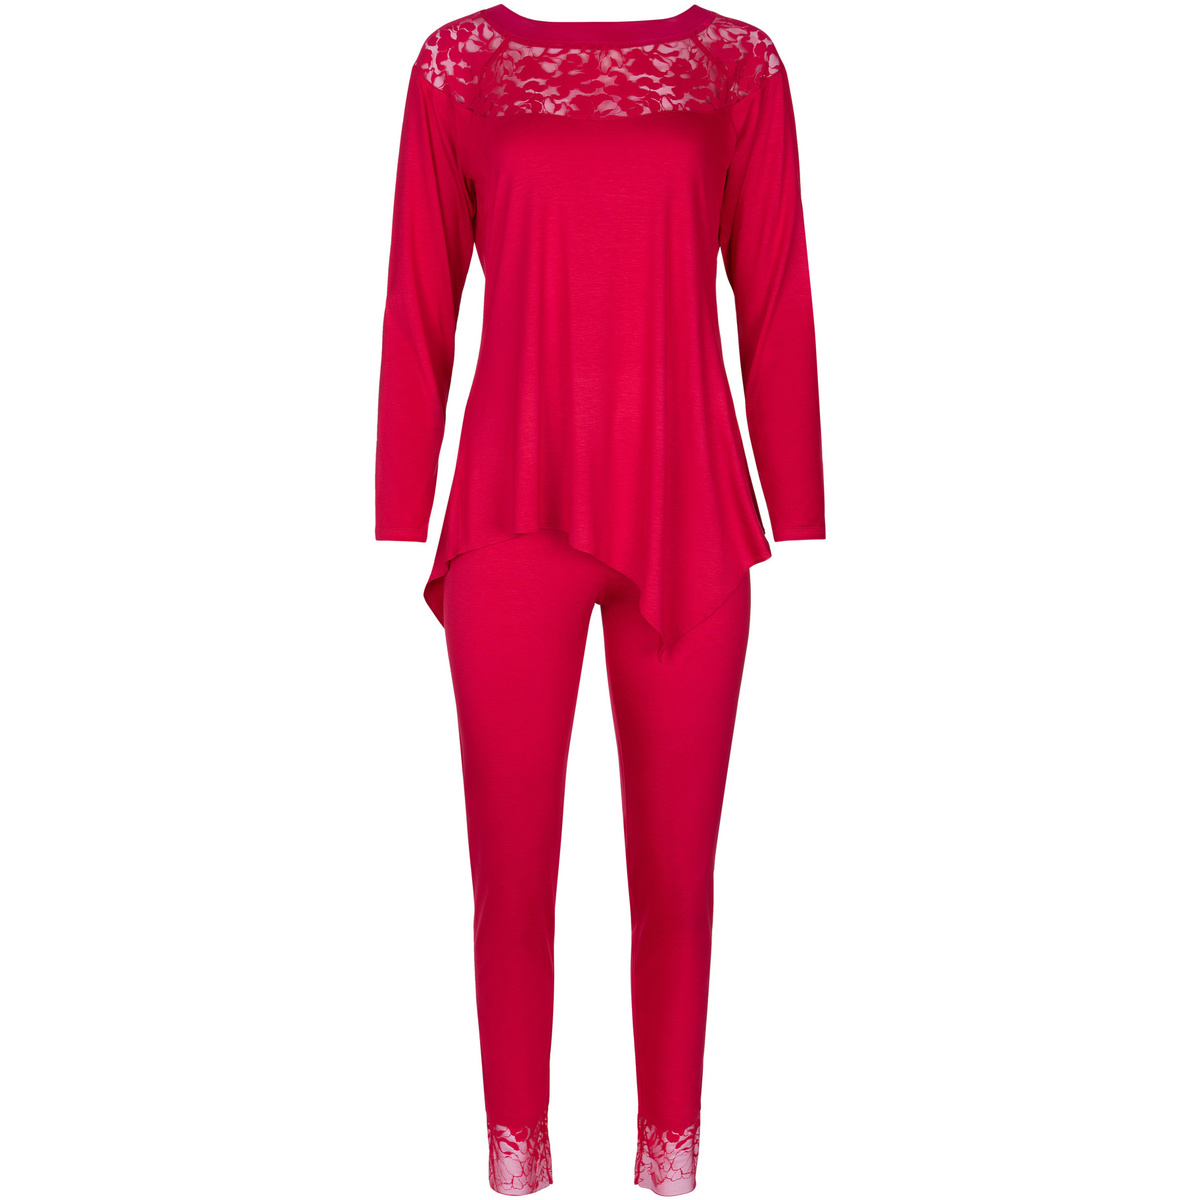 Vêtements Femme Tops, Chemisiers, Pulls, Gilets Pyjama tenue d'intérieur pantalon top manches longues Rouge